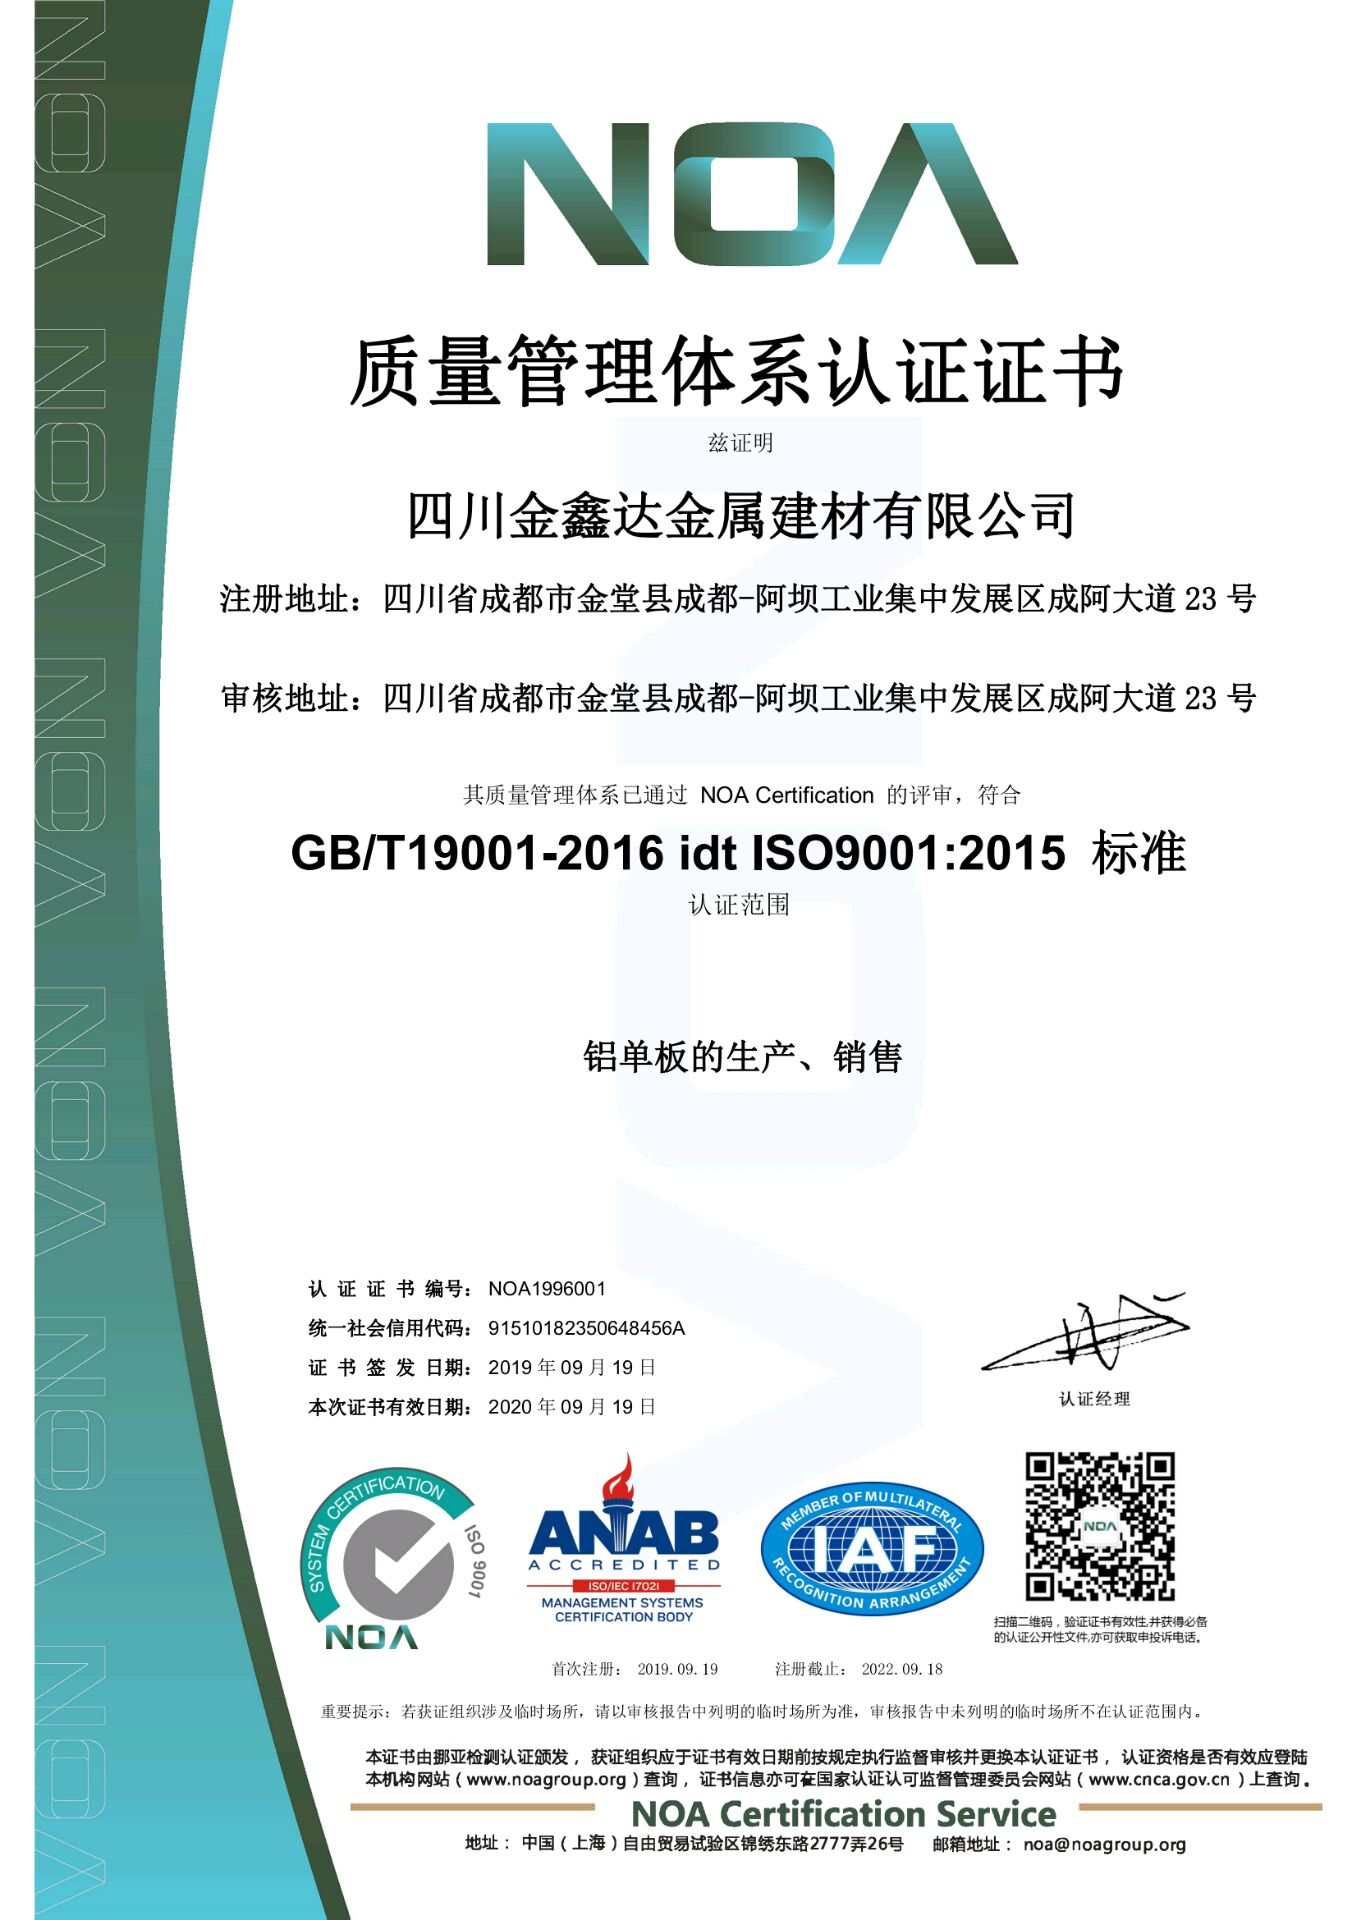 四川金鑫达获得“质量管理体系认证证书”